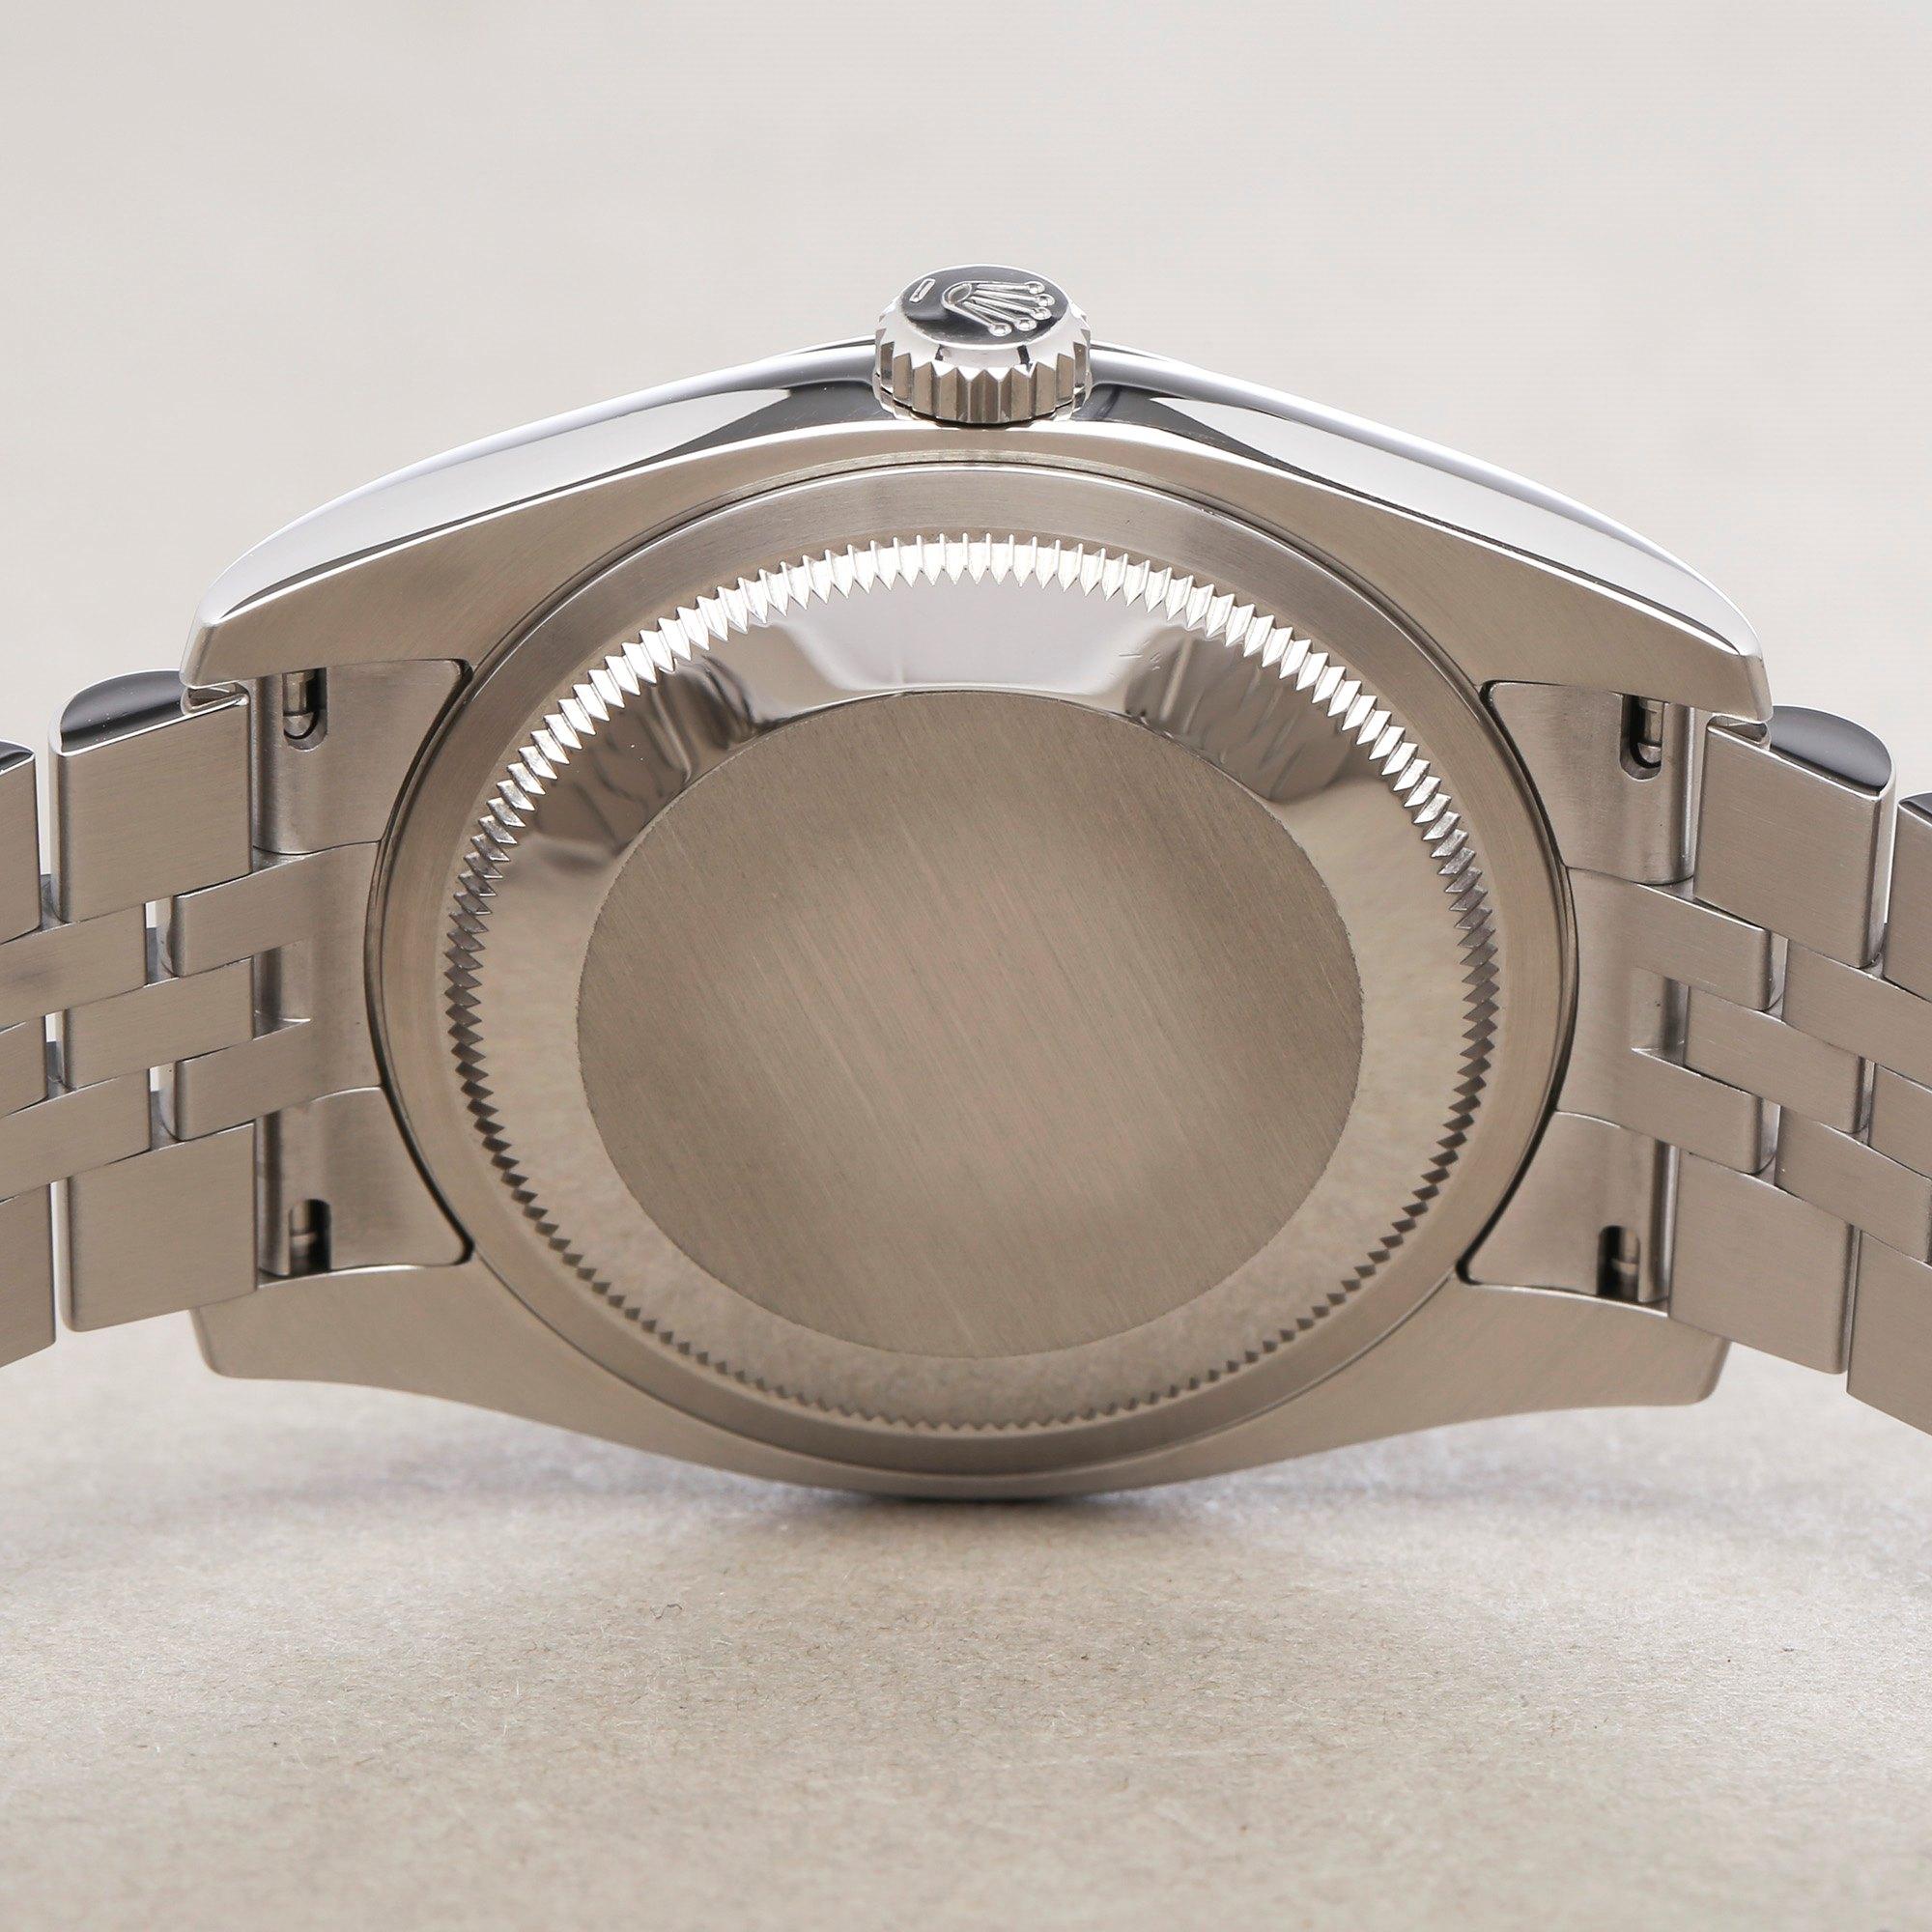 Rolex Datejust 36 116234 Unisex Stainless Steel 0 Watch 5